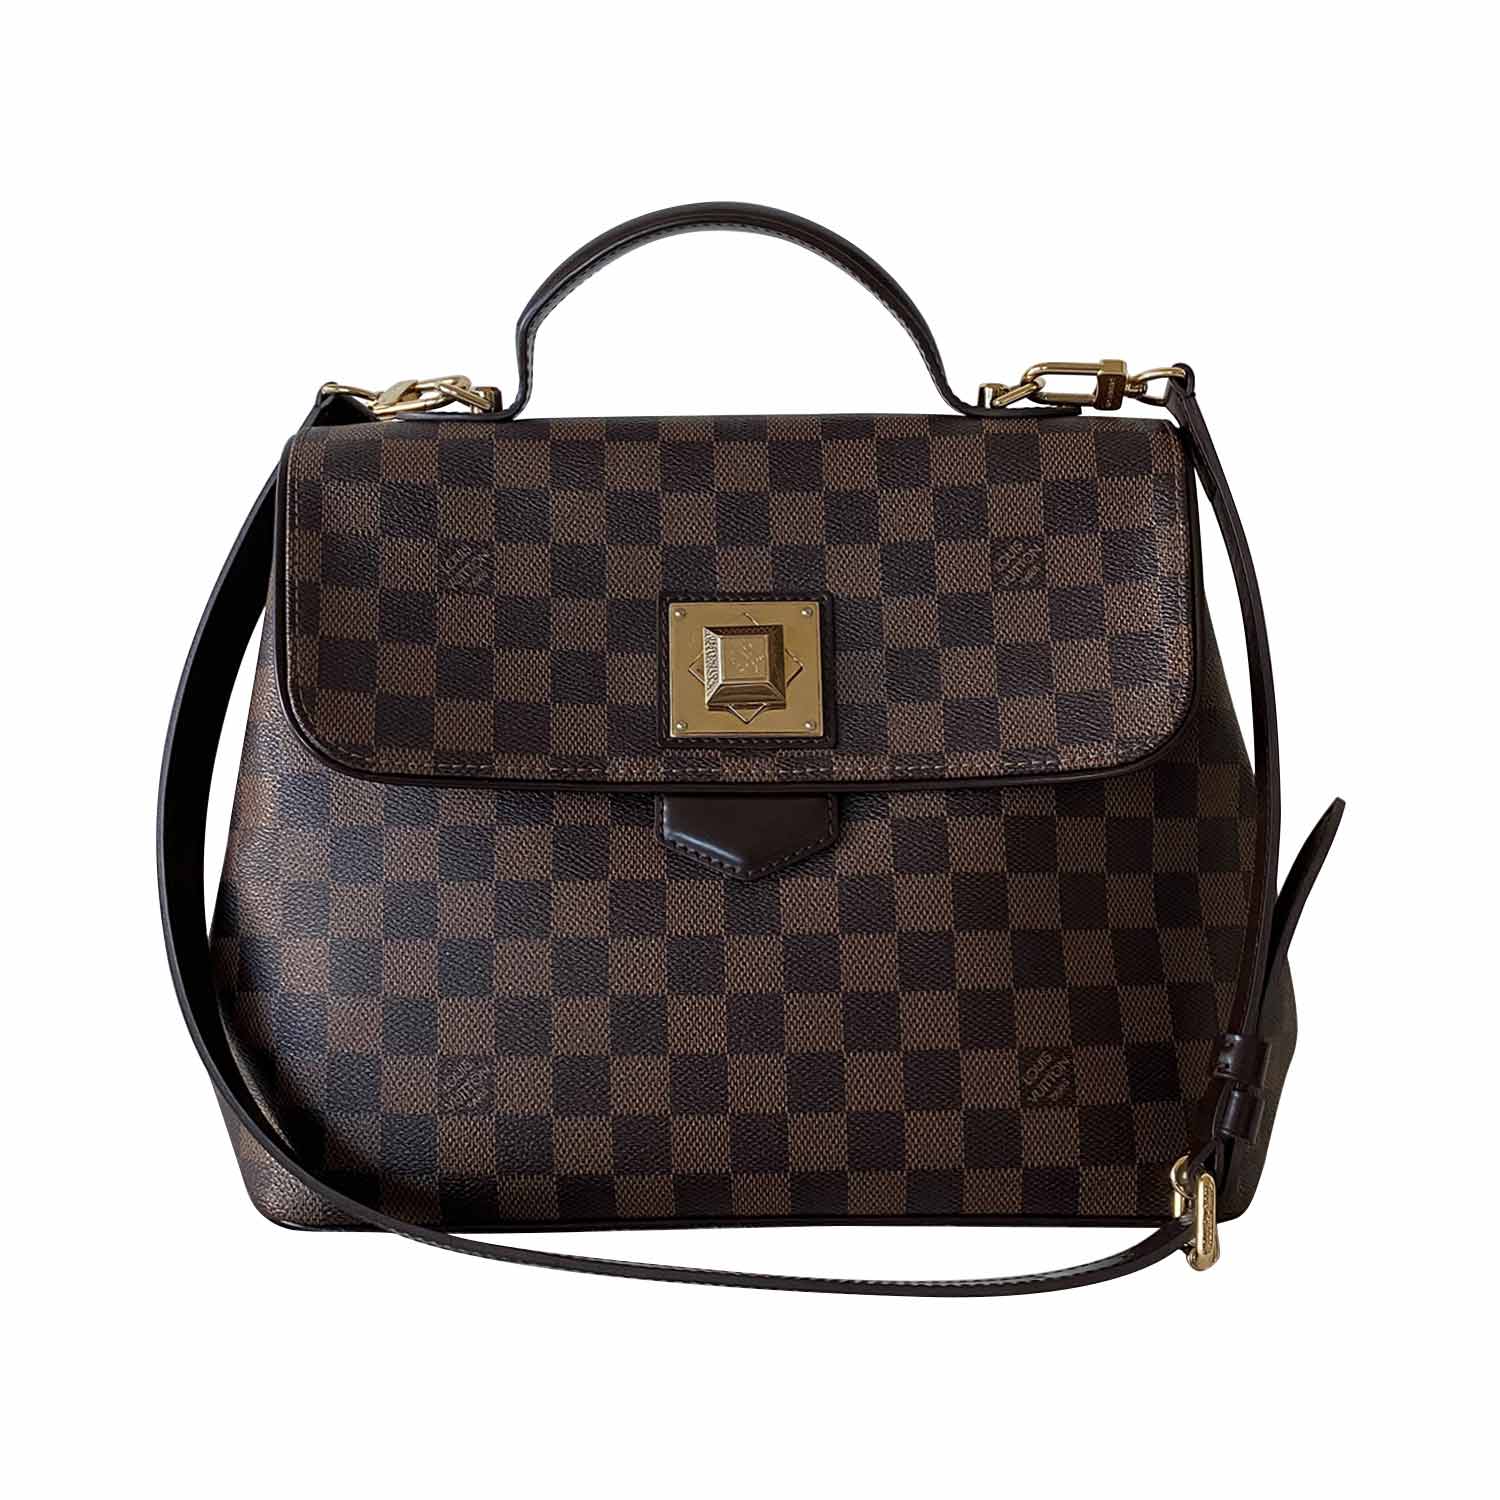 Louis Vuitton Bergamo Handbag 310758